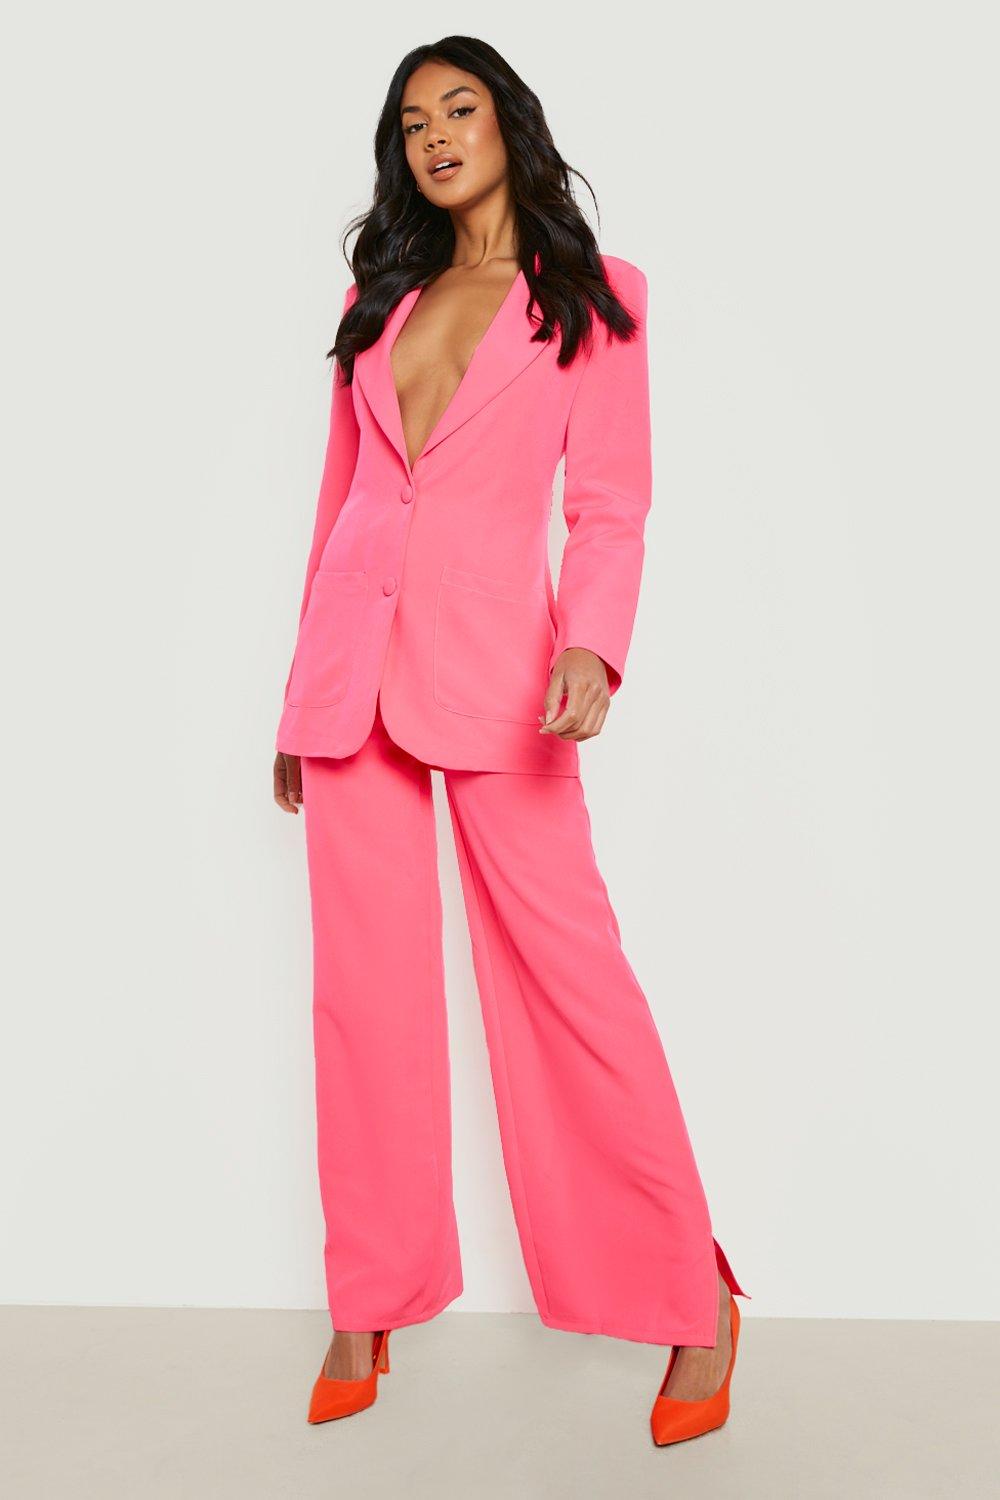 https://media.boohoo.com/i/boohoo/gzz12980_neon-pink_xl_2/femme-neon-pink-pantalon-de-costume-fluo-%C3%A0-fentes